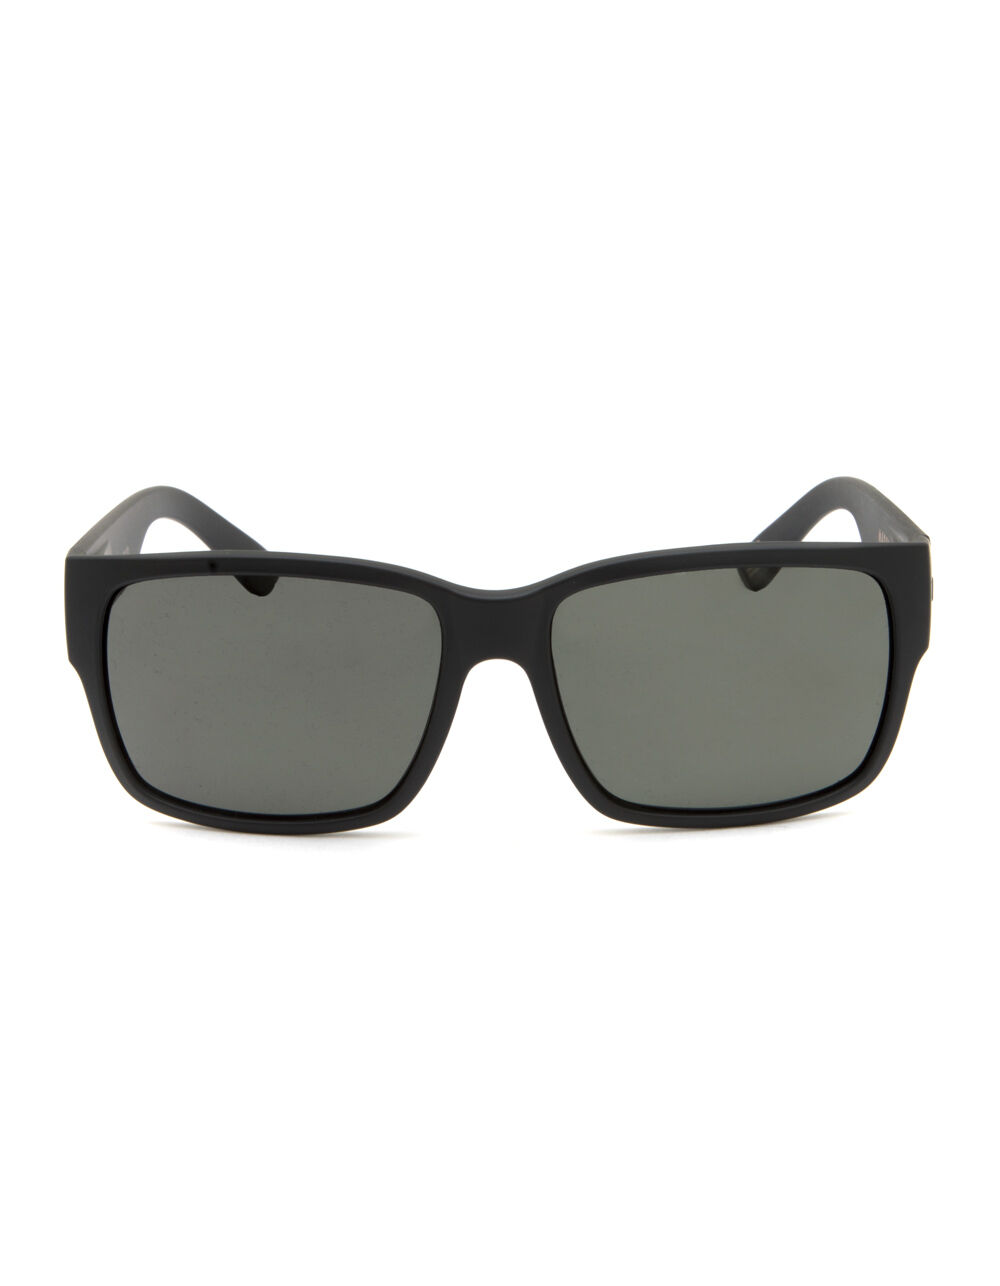 MADSON Classico Matte Black & Camo Polarized Sunglasses - CAMO BLACK ...